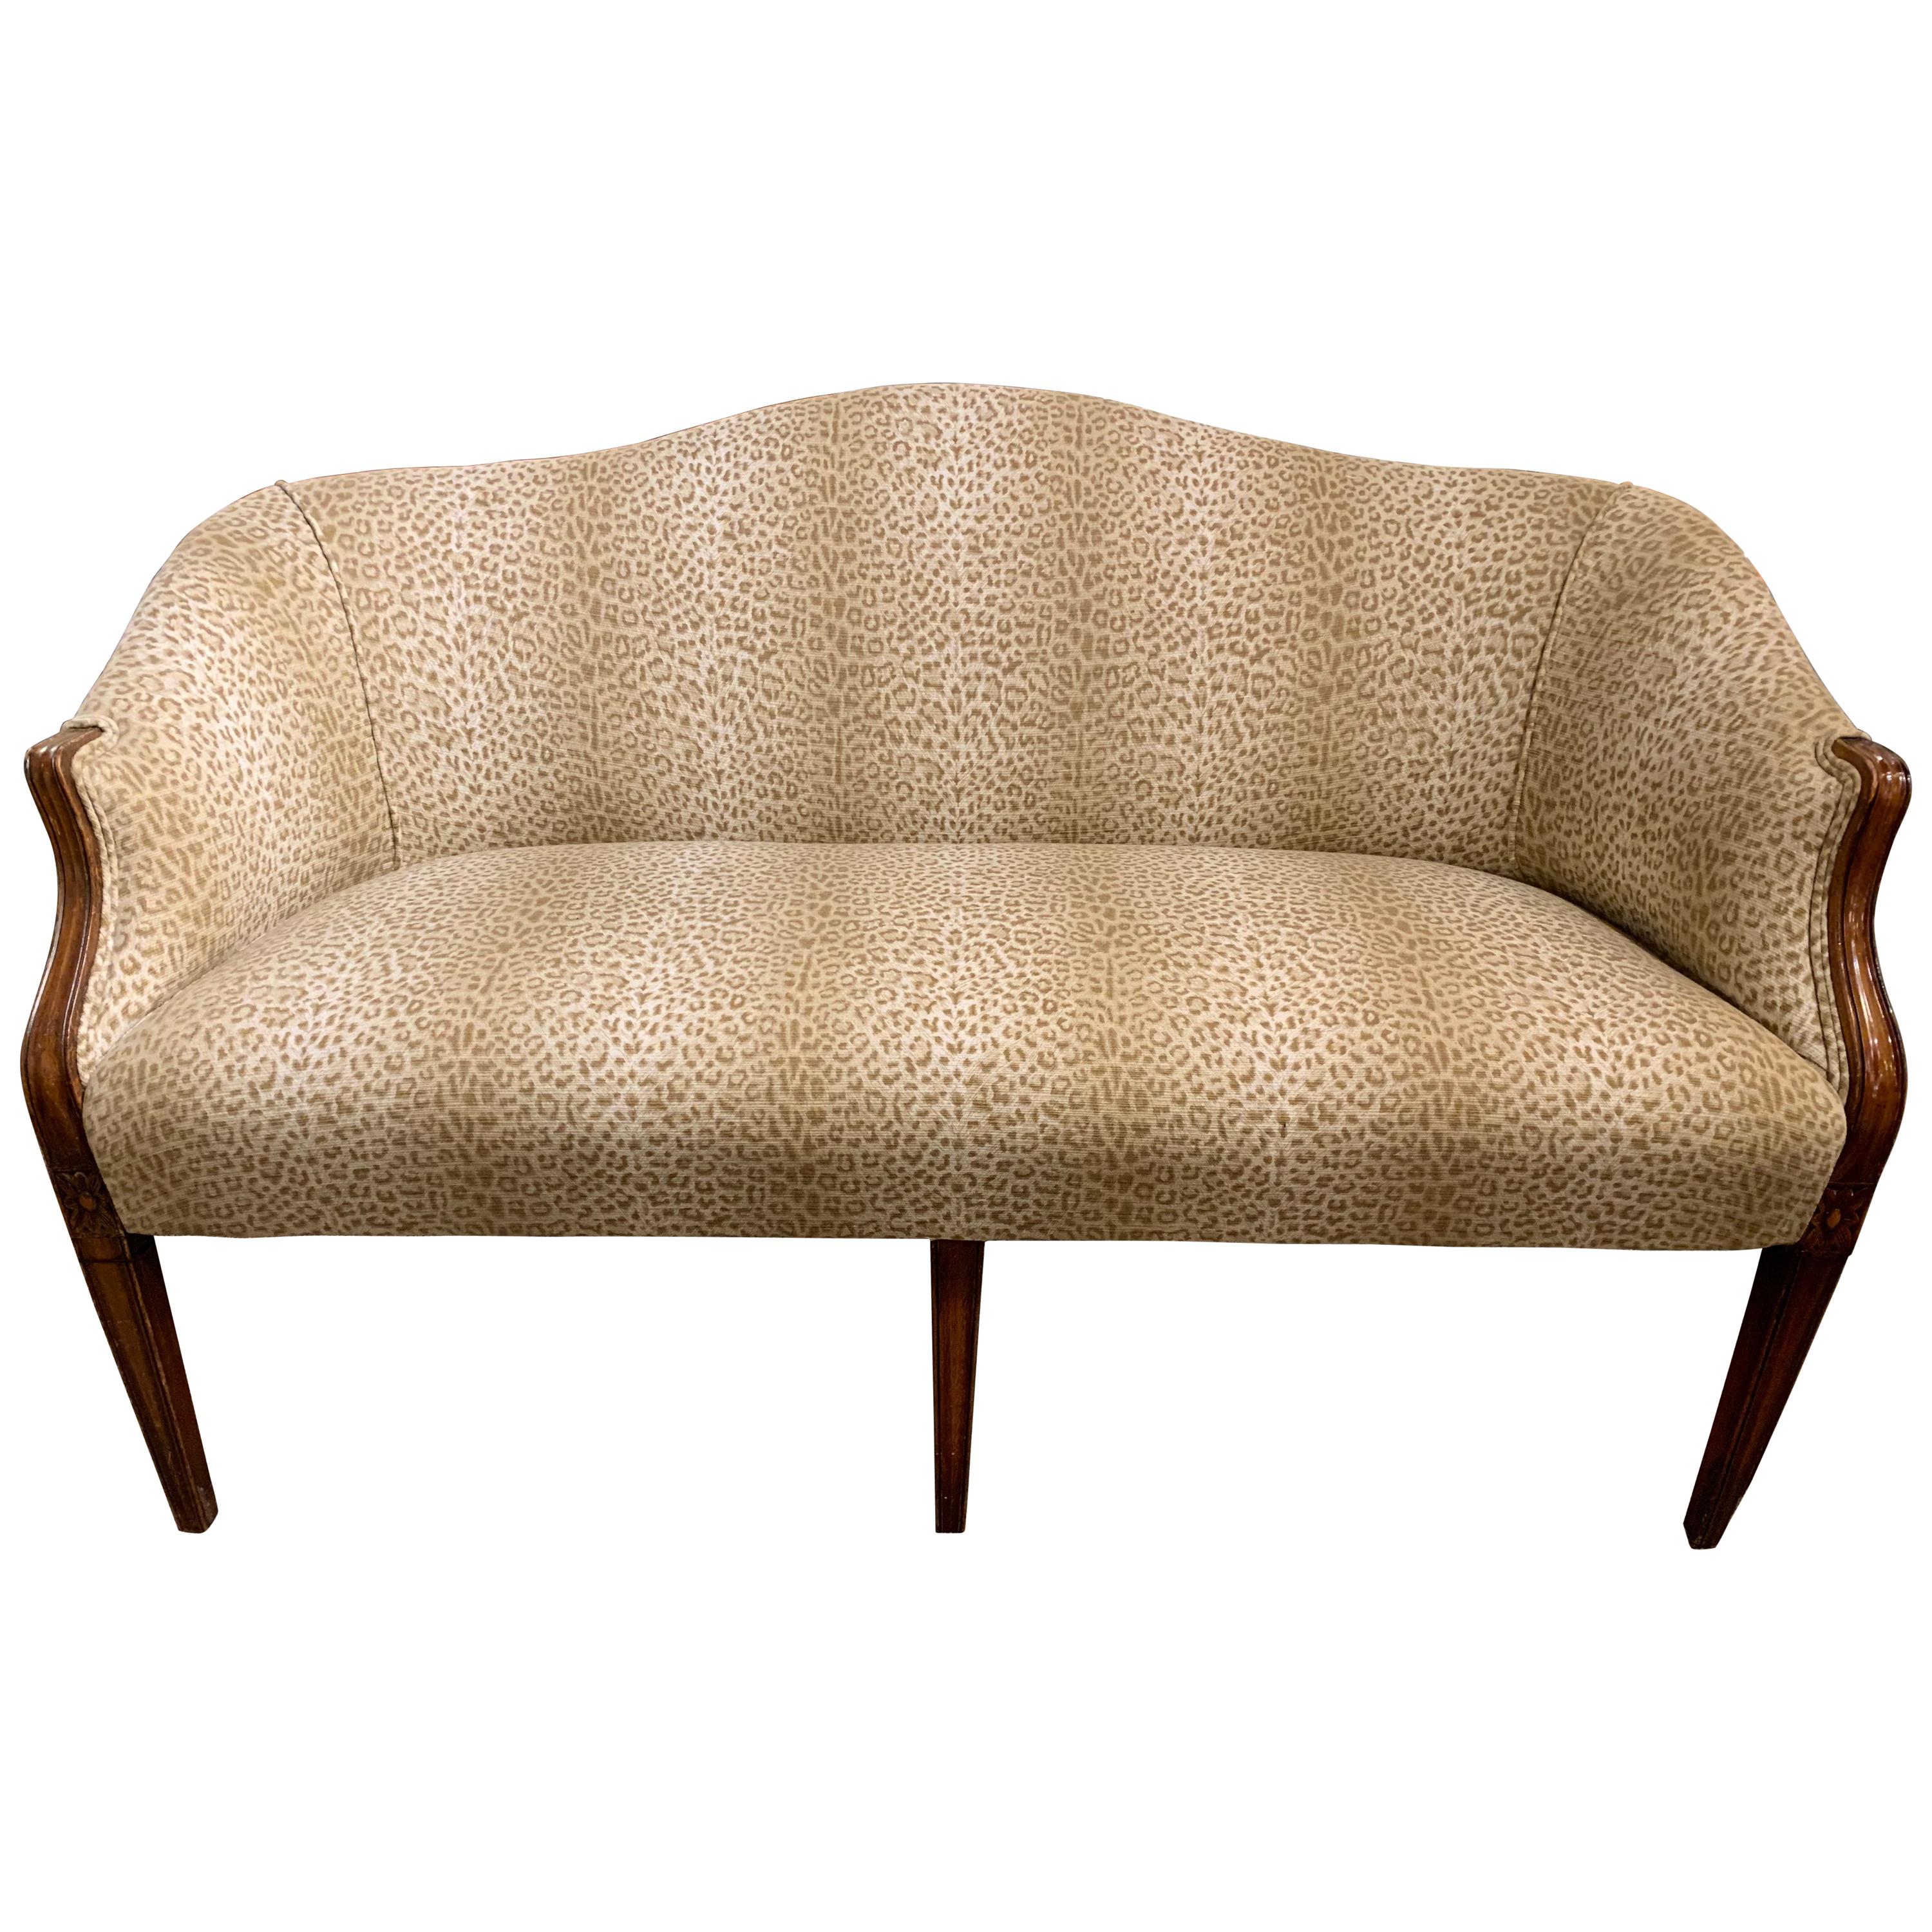 Sensational Mahogany and Animal Print Upholstered Sofa